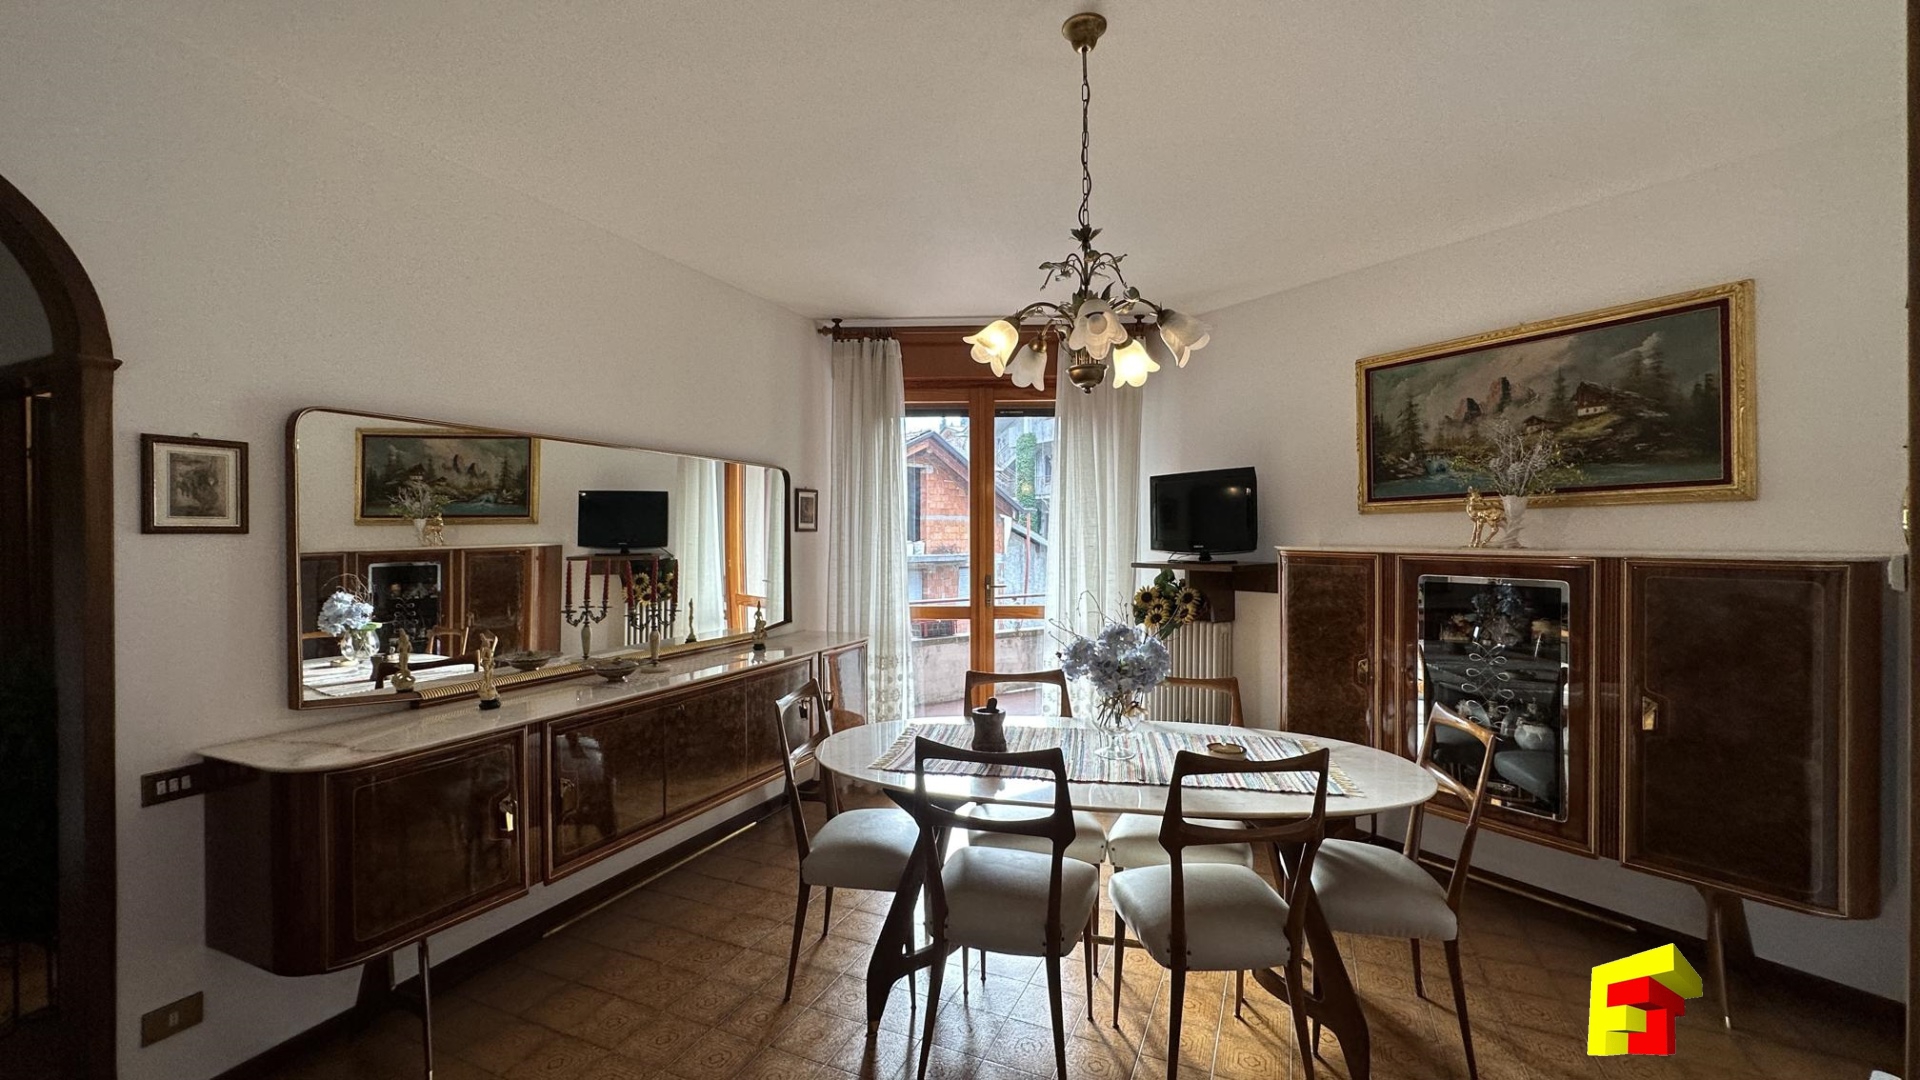 Appartamento in vendita a Cremeno, 2 locali, prezzo € 75.000 | PortaleAgenzieImmobiliari.it